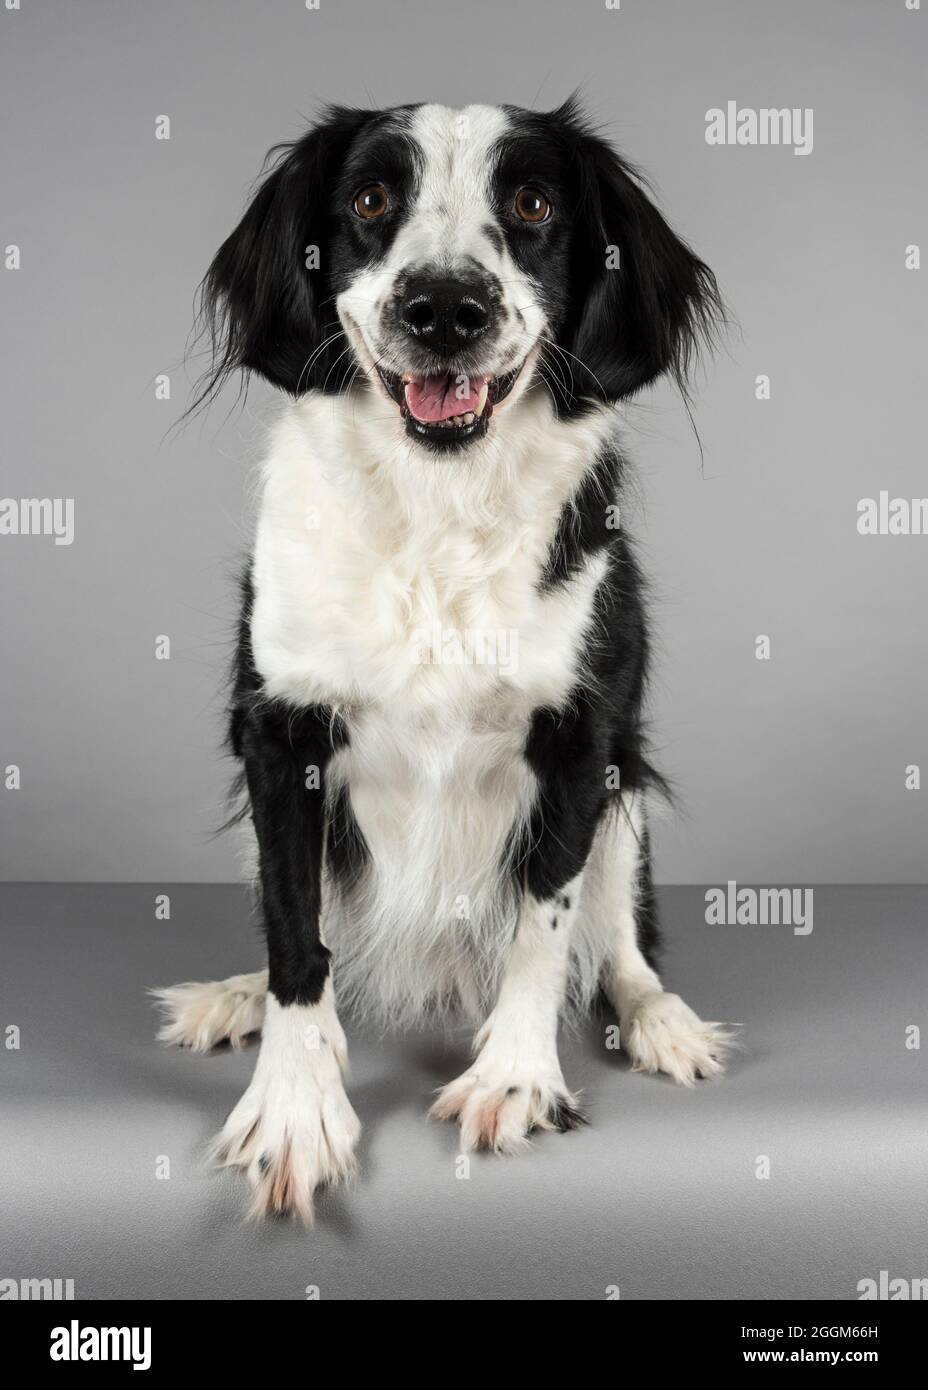 Une femme de 6.5 ans Border Collie / Springer Spaniel (Sprollie) chien (appelé Jess) photographié sur fond gris studio. Banque D'Images